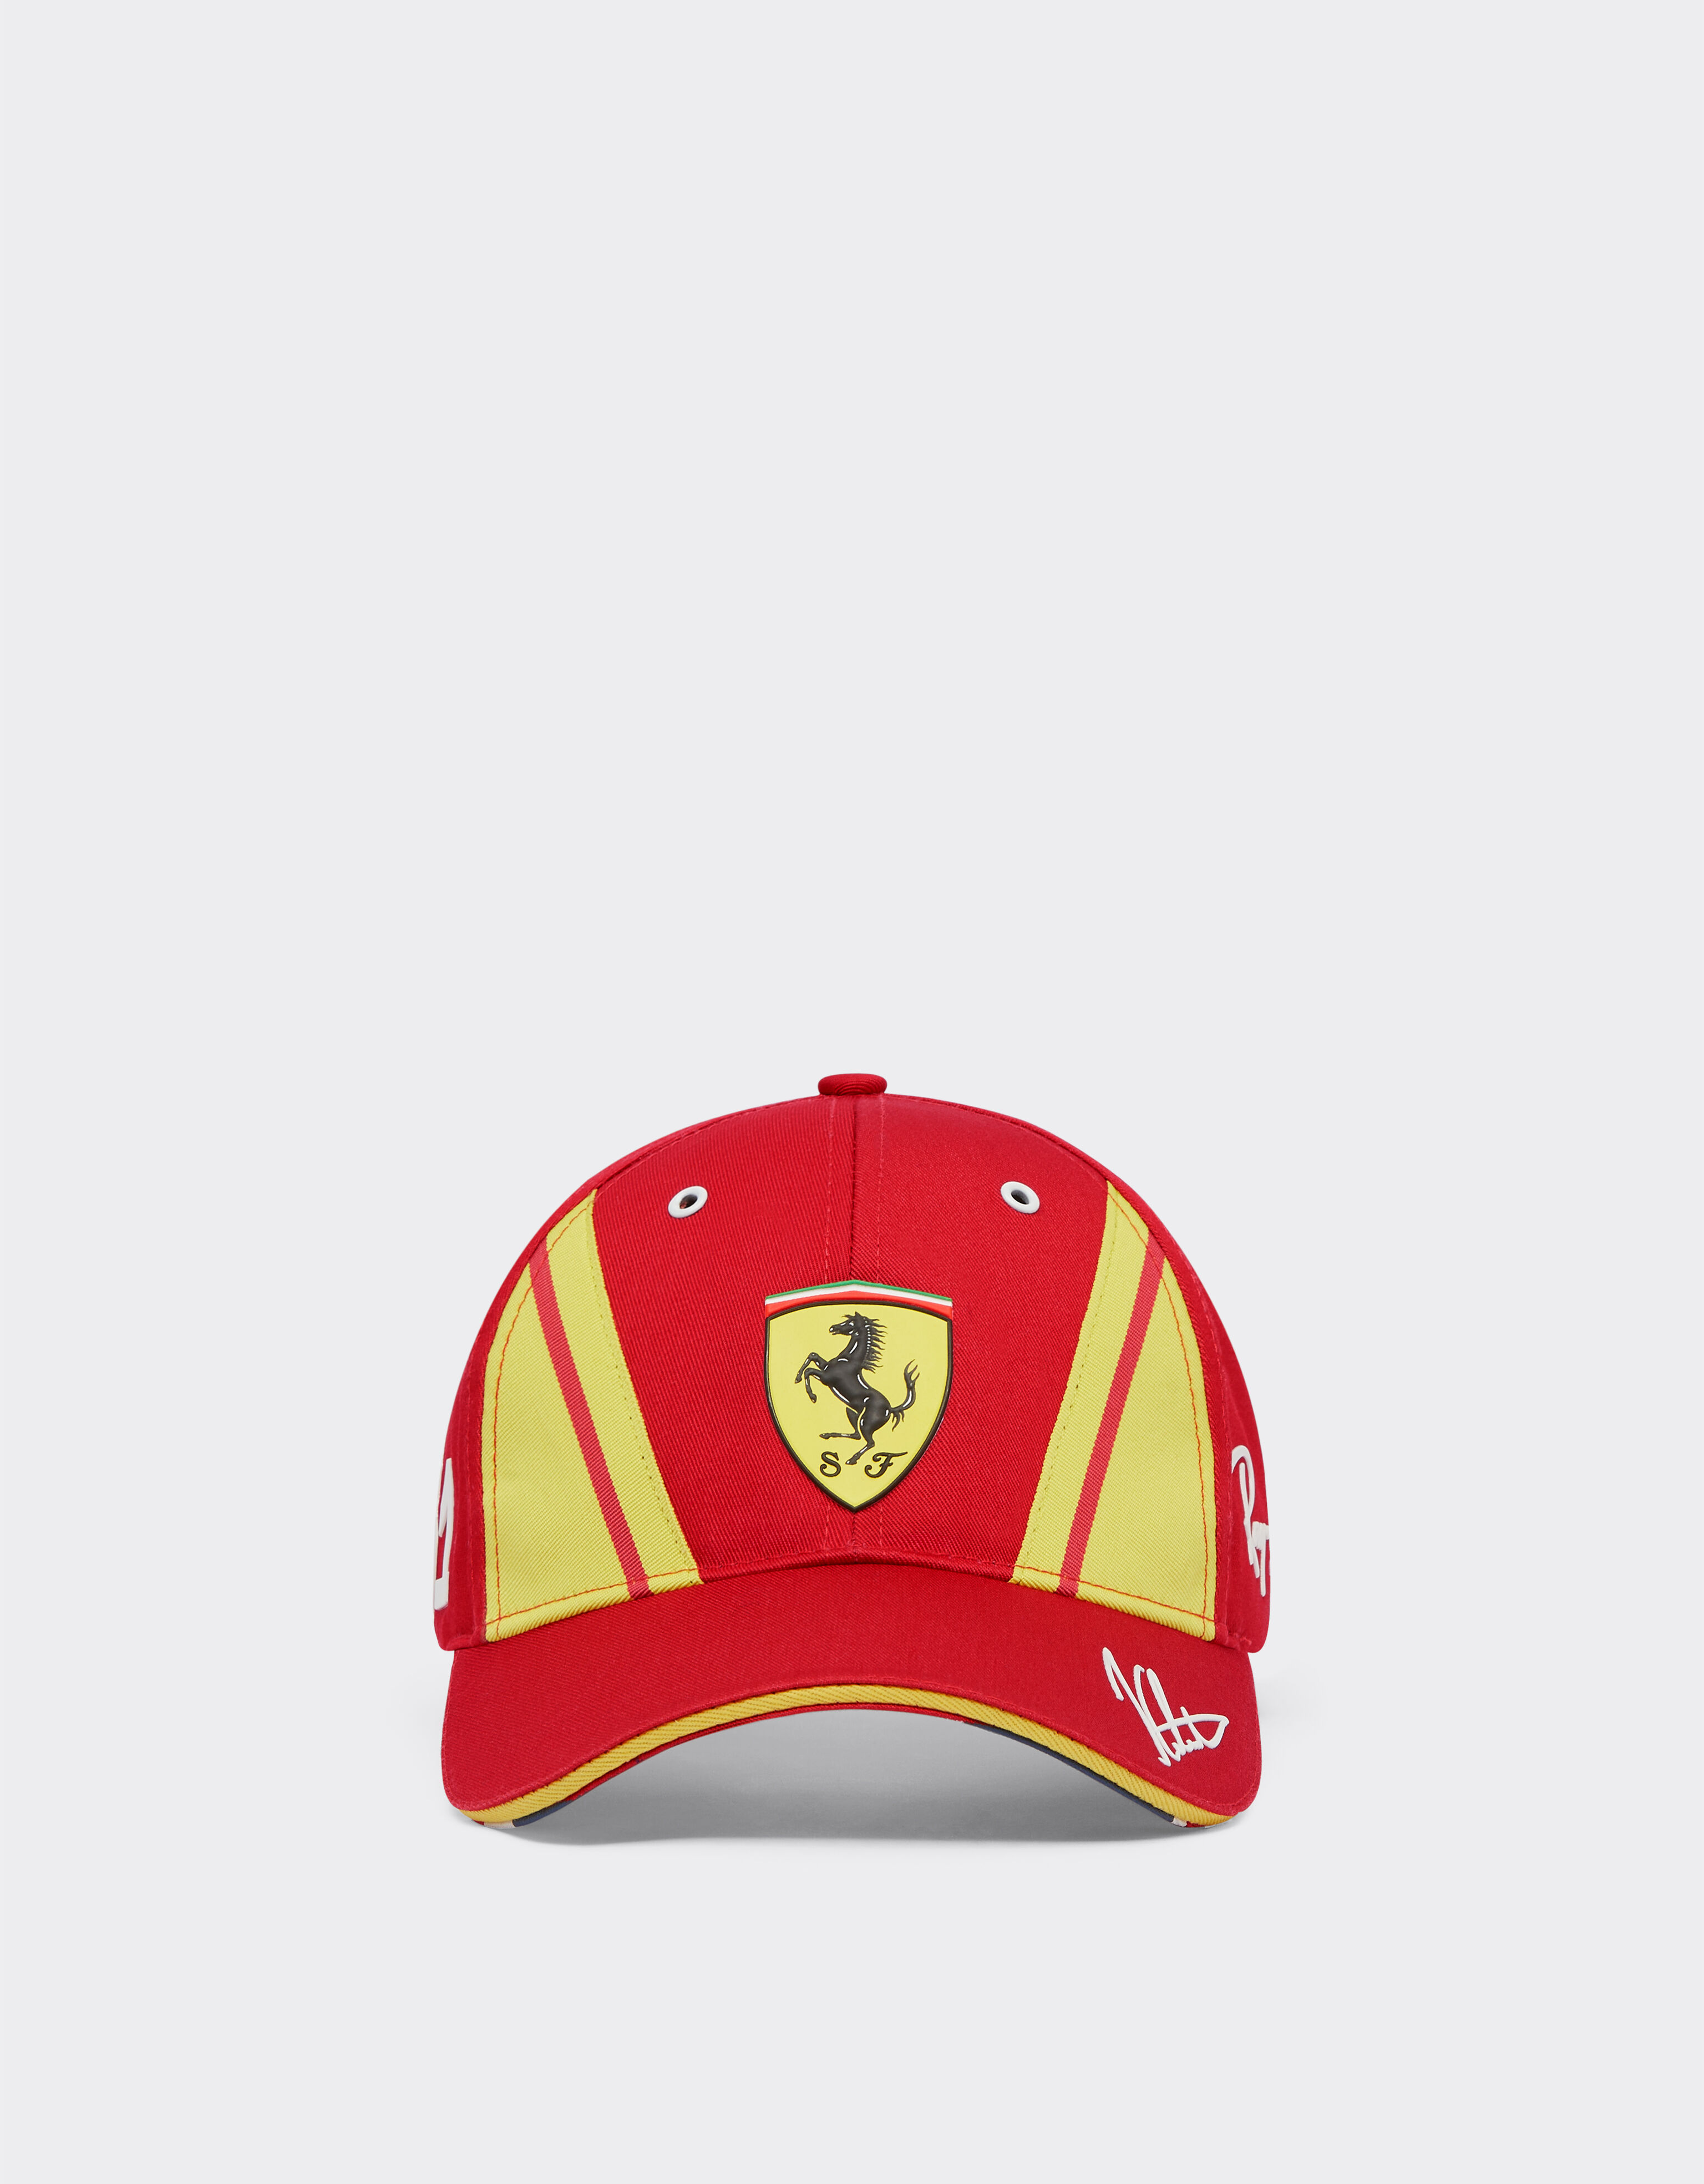 Ferrari Ferrari Hypercar ハット カラド - リミテッドエディション レッド F1327f